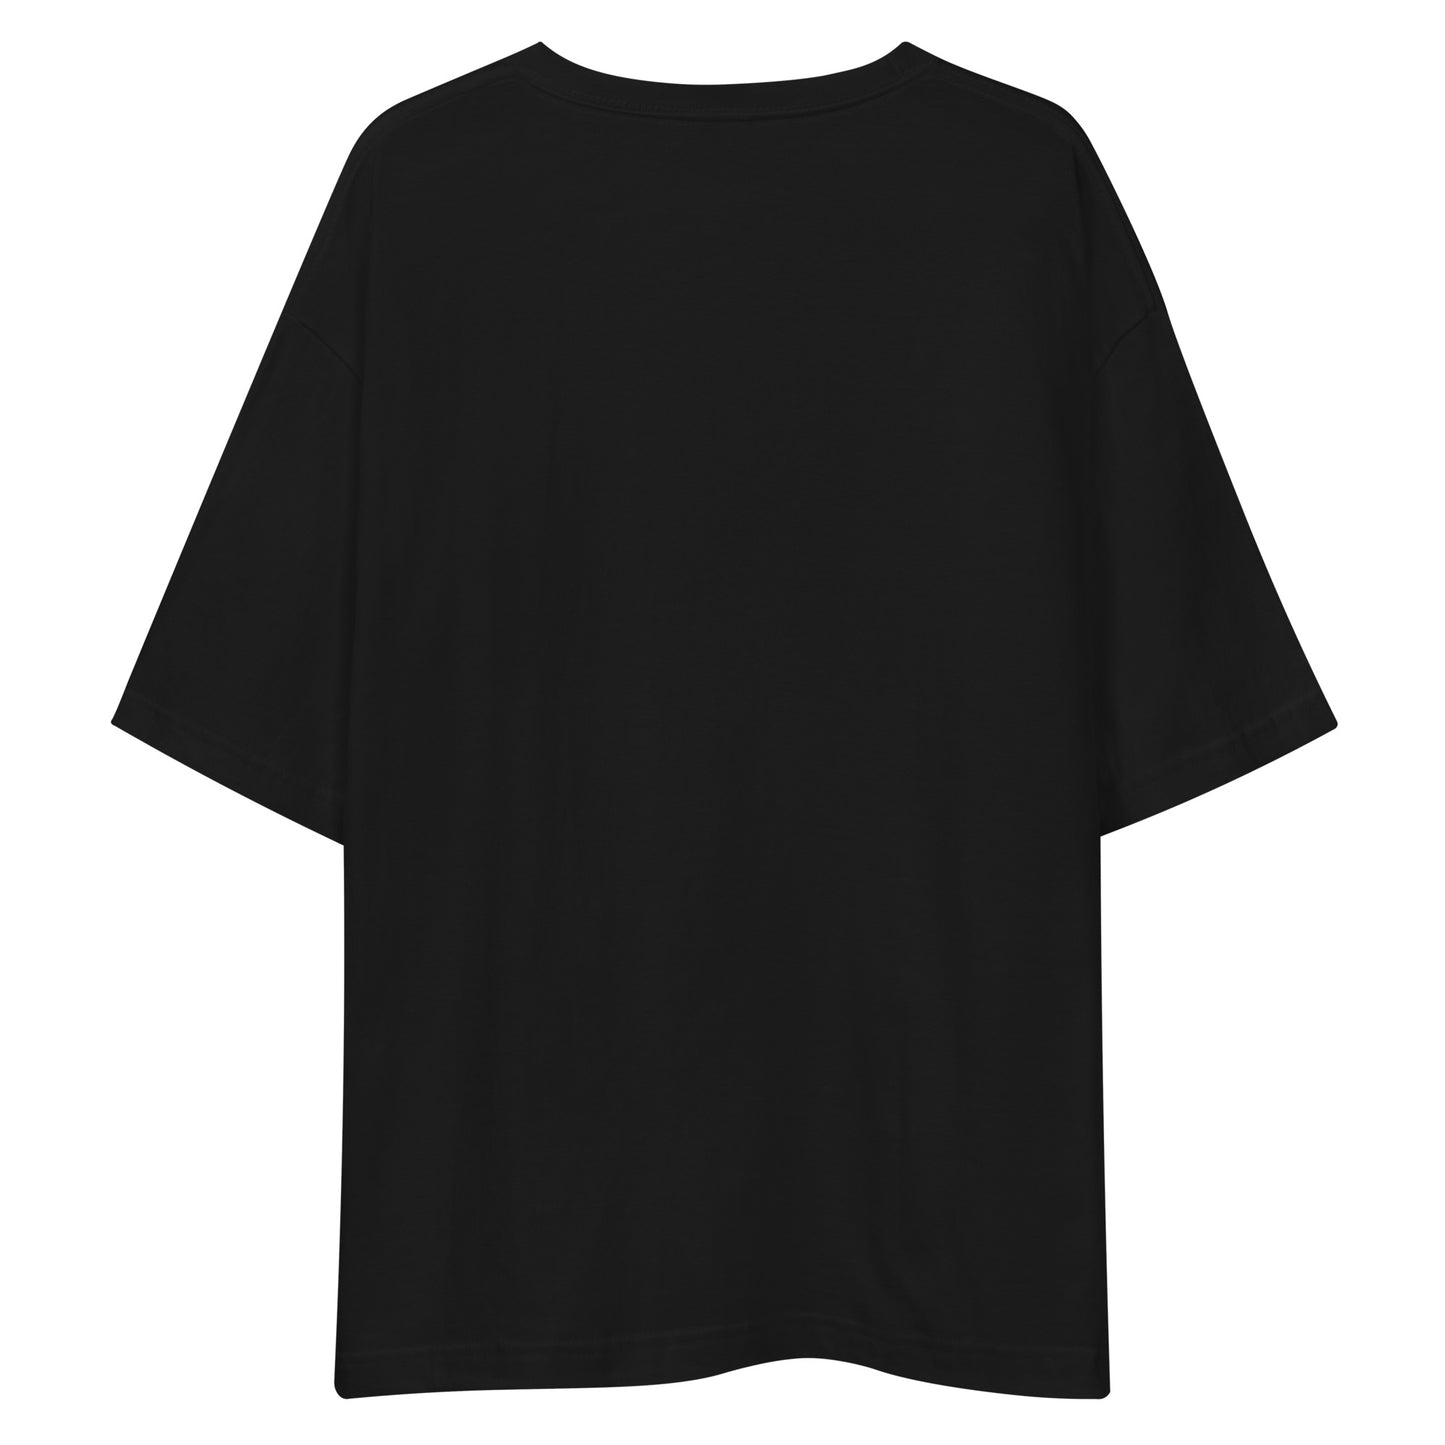 E215 - Tシャツ/ビッグシルエット(ユニバーサルジャンプ : ブラック/シルバー)